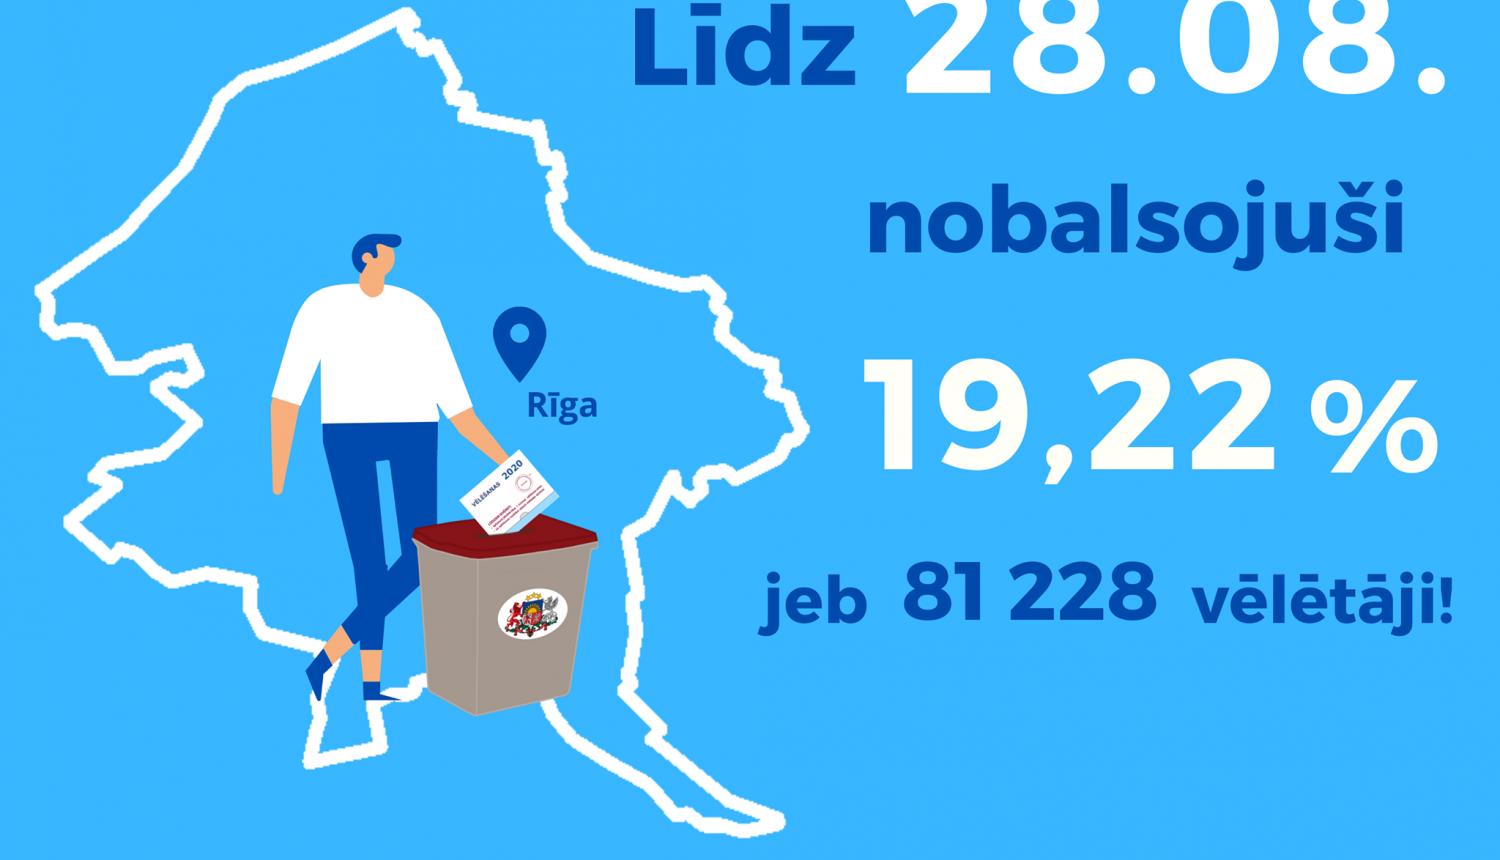 Iepriekšējās balsošanas dienās Rīgas domes vēlēšanās nobalsojuši 19,22% vēlētāju